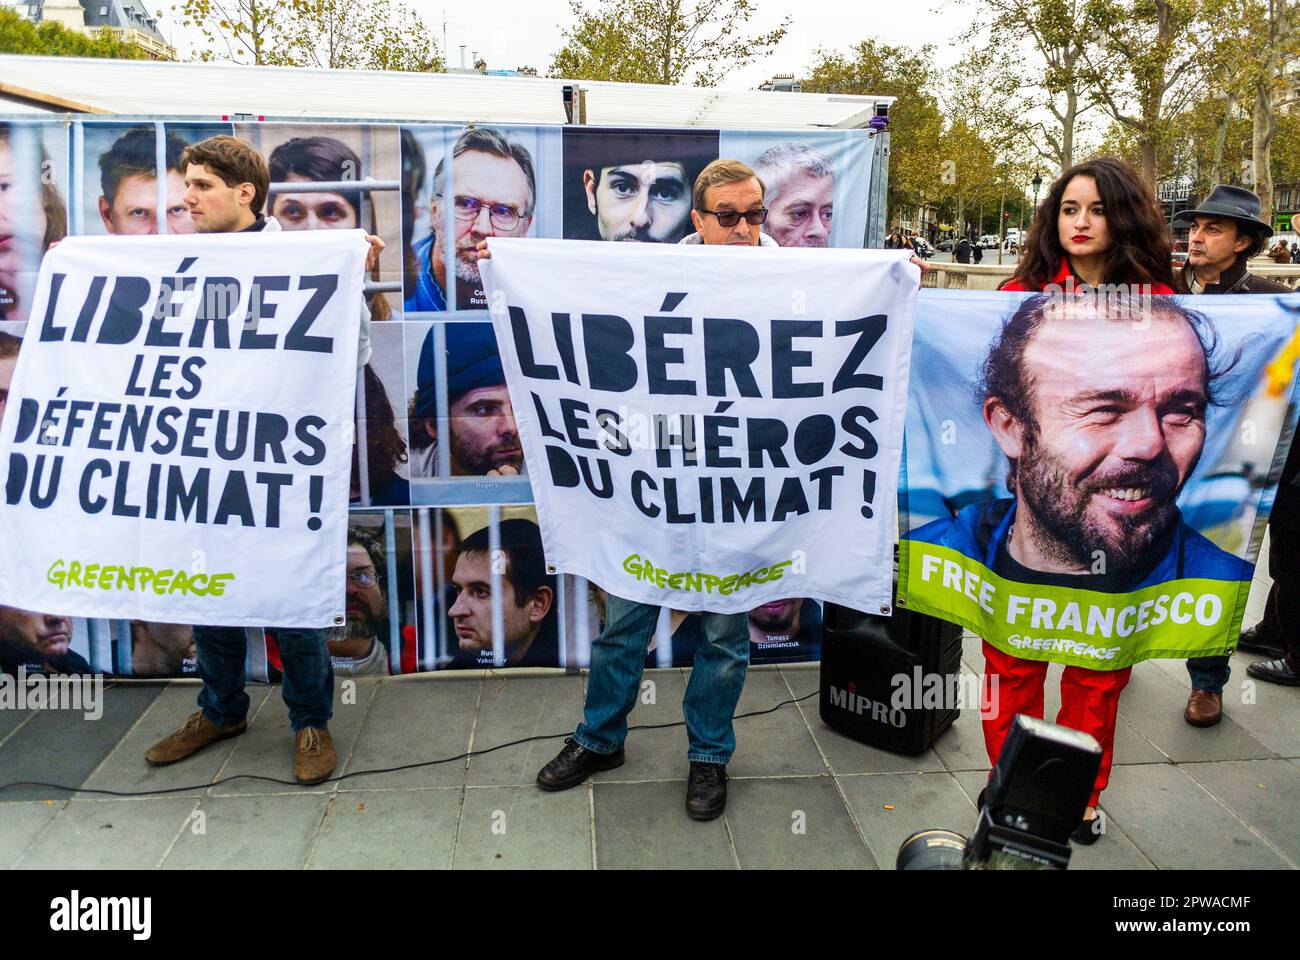 Paris, France, Greenpeace, activistes environnementaux, N.G.O. Manifestation pour libérer les militants du climat emprisonné, signes de protestation, 2013 Banque D'Images